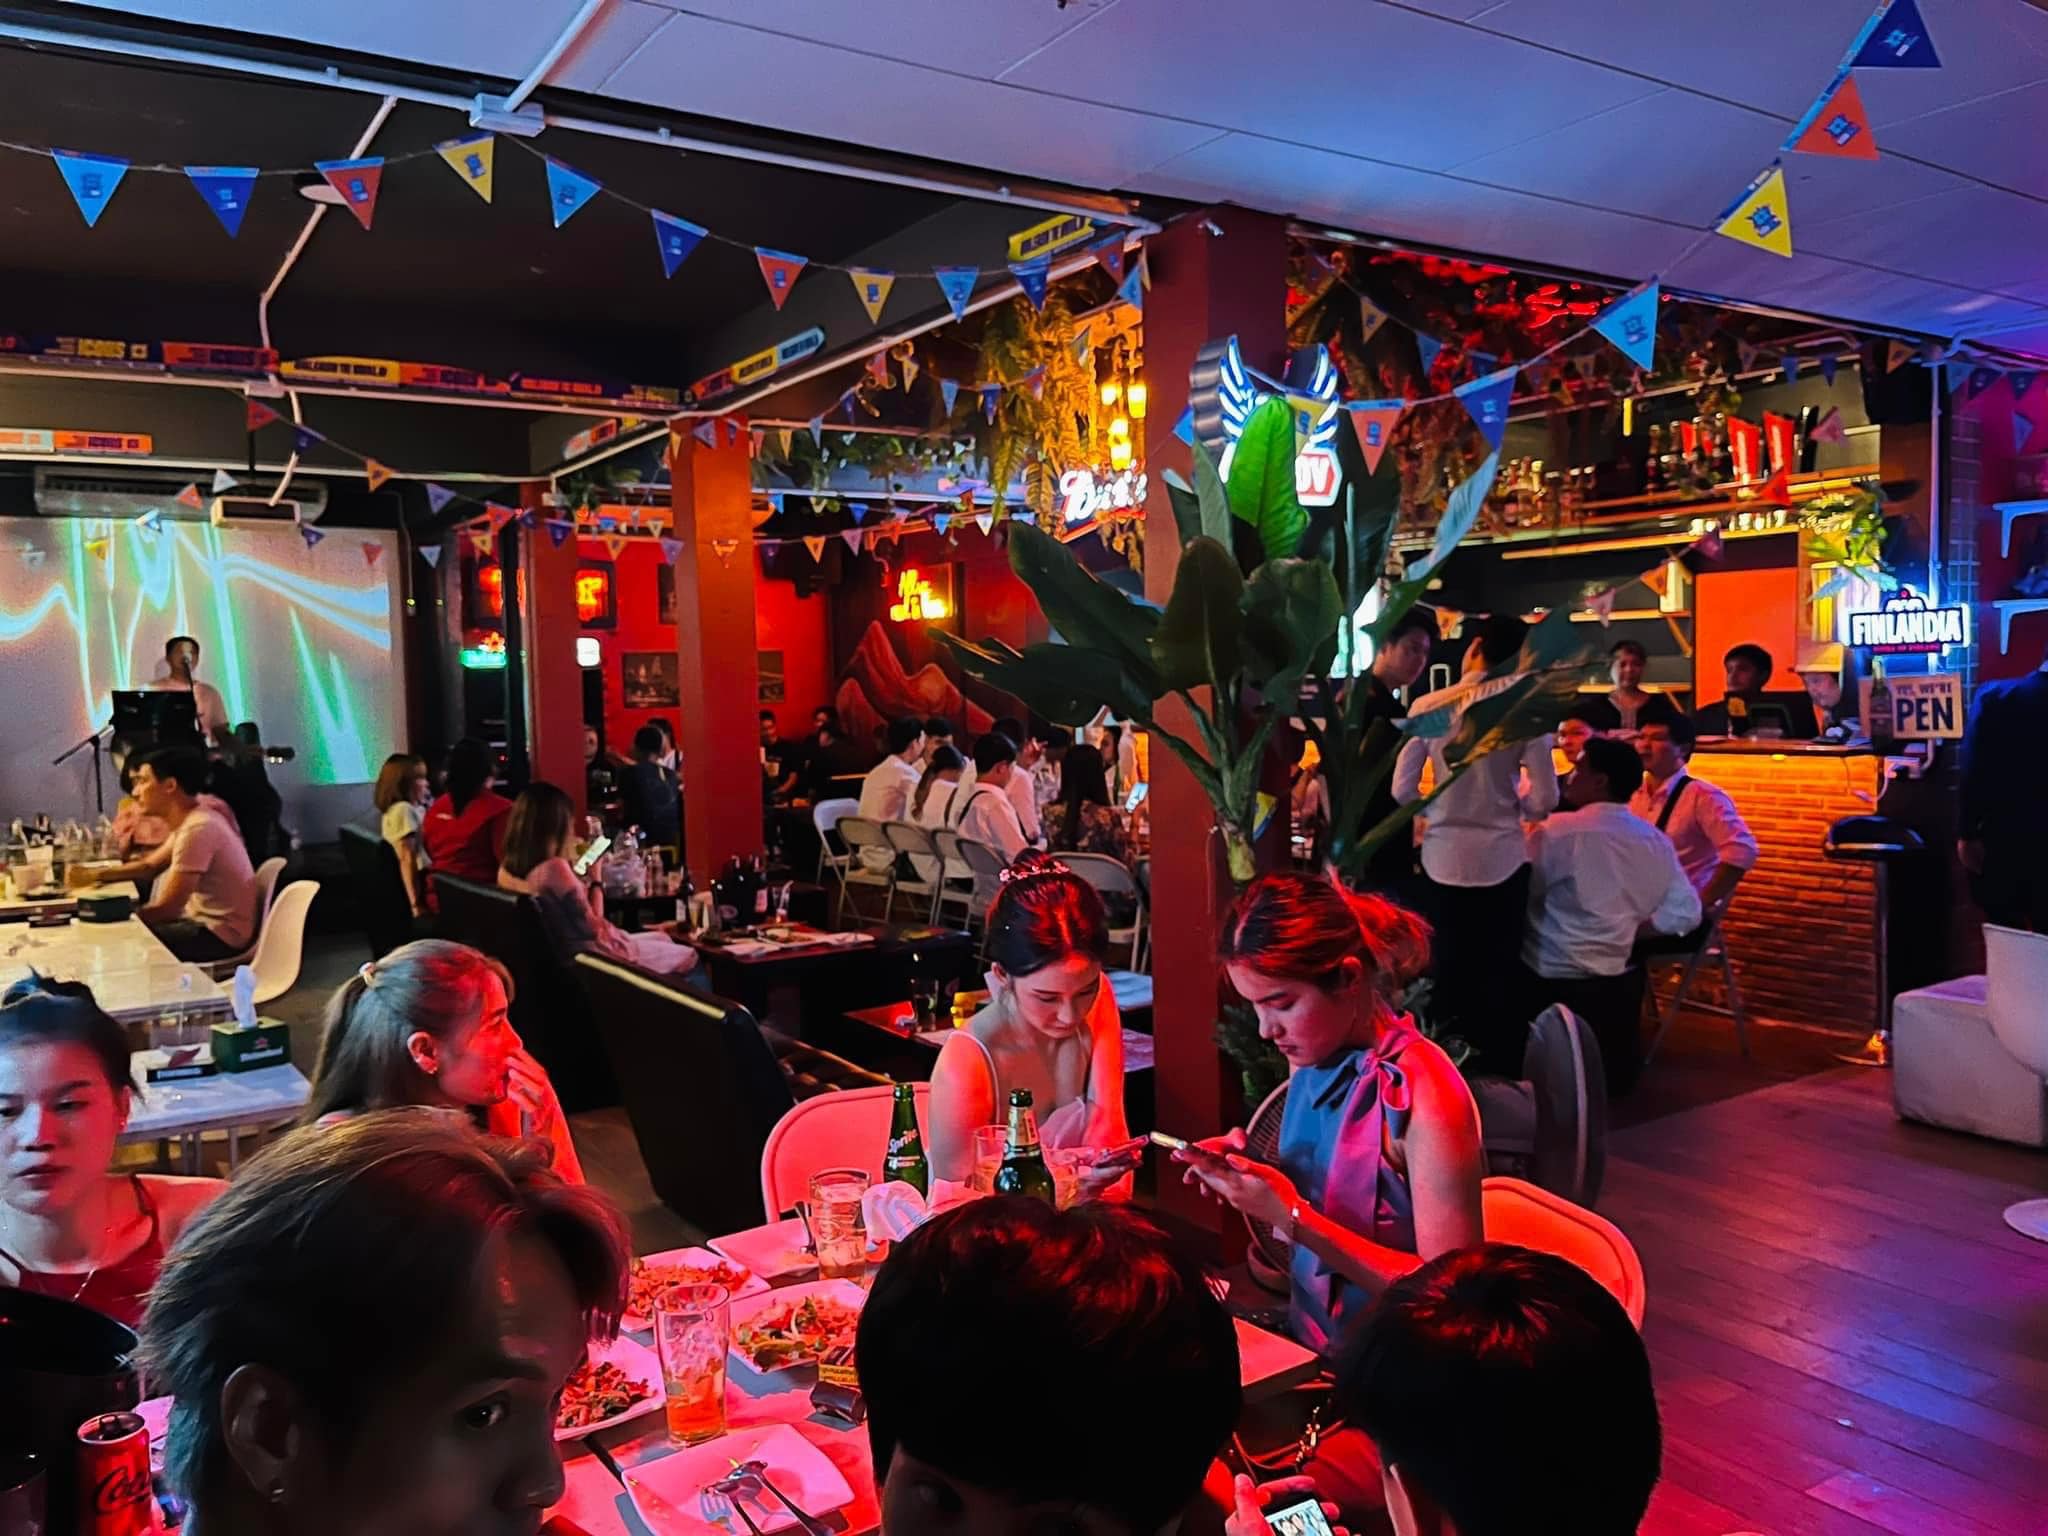 เจ้านายหม่าล่า Bar&Bistro (เจ้านายหม่าล่า Bar&Bistro) : กรุงเทพมหานคร (Bangkok)